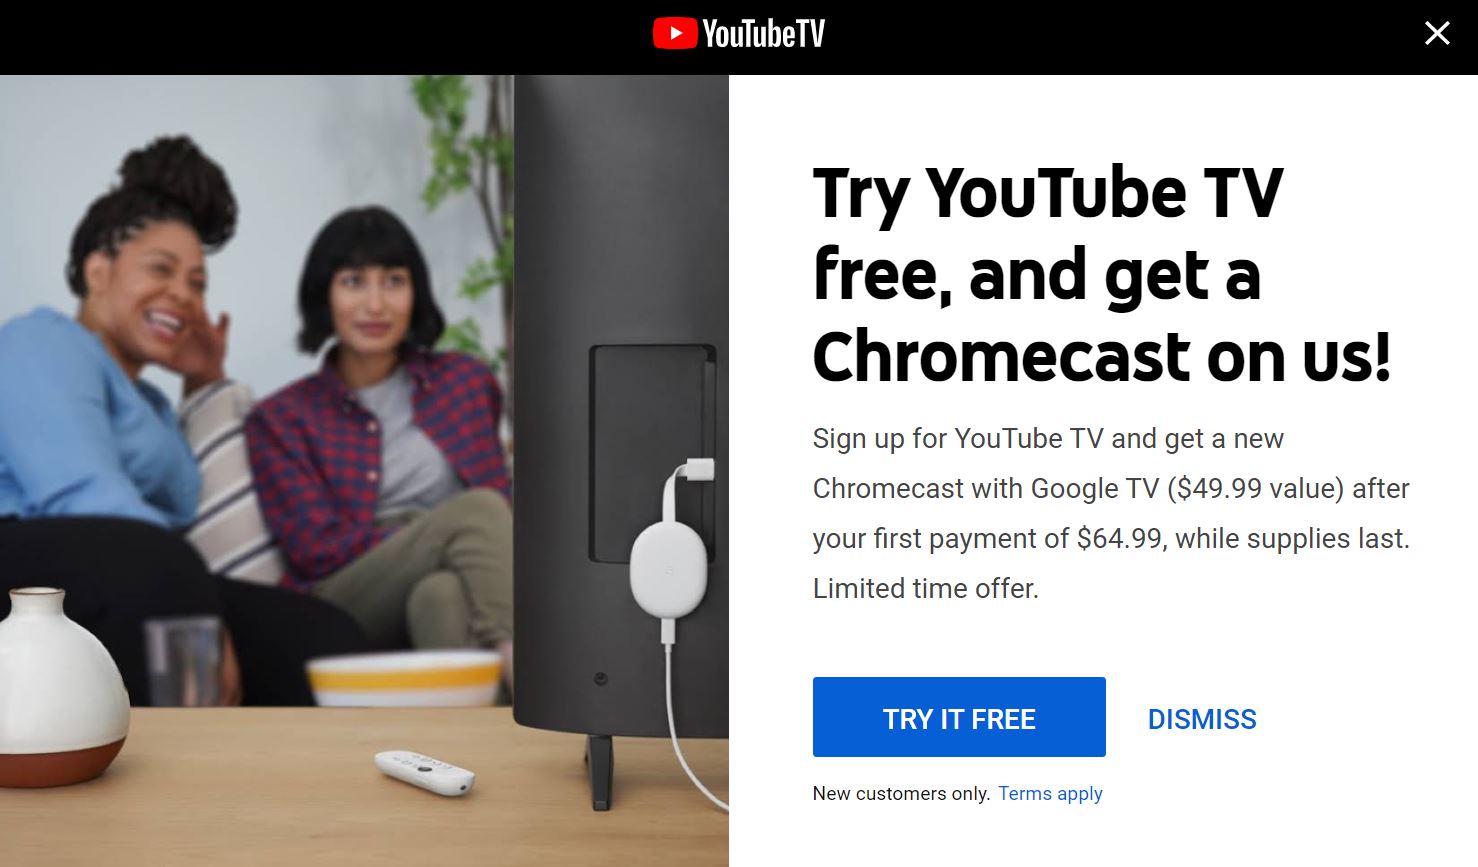 YouTube TV Free Chromecast with Google TV